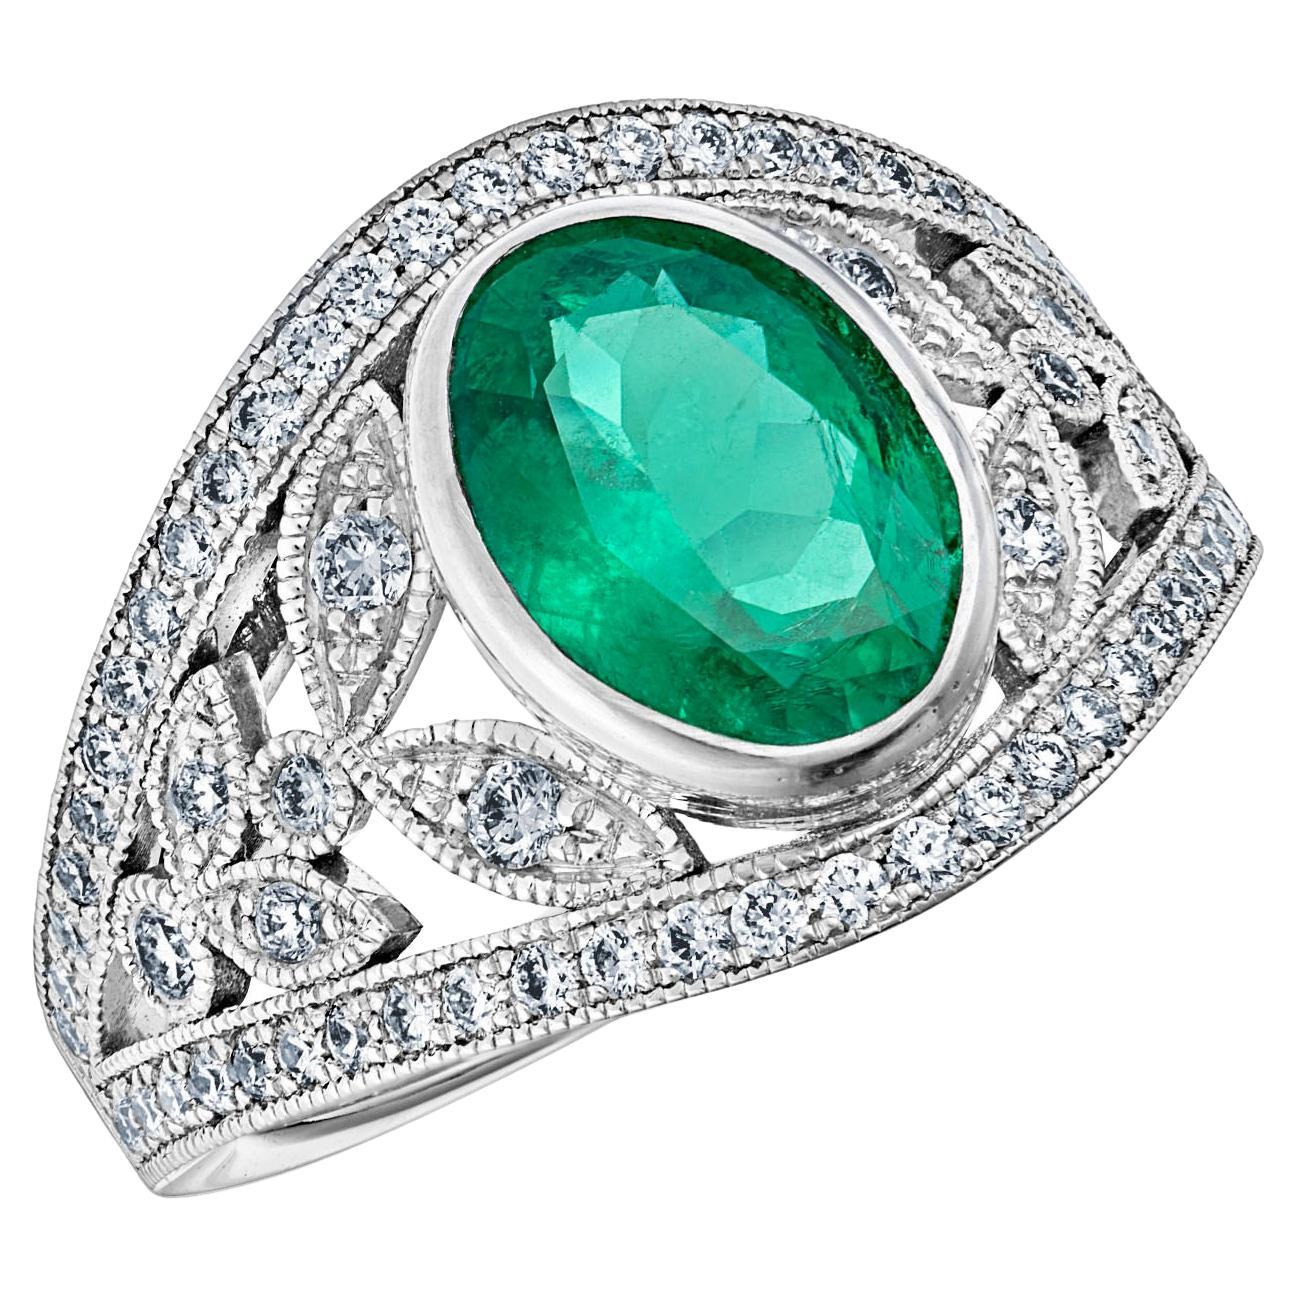 For Sale:  18k White Gold Laurel Leaf Design 1.28 Ct Vivid Green Oval Emerald Ring